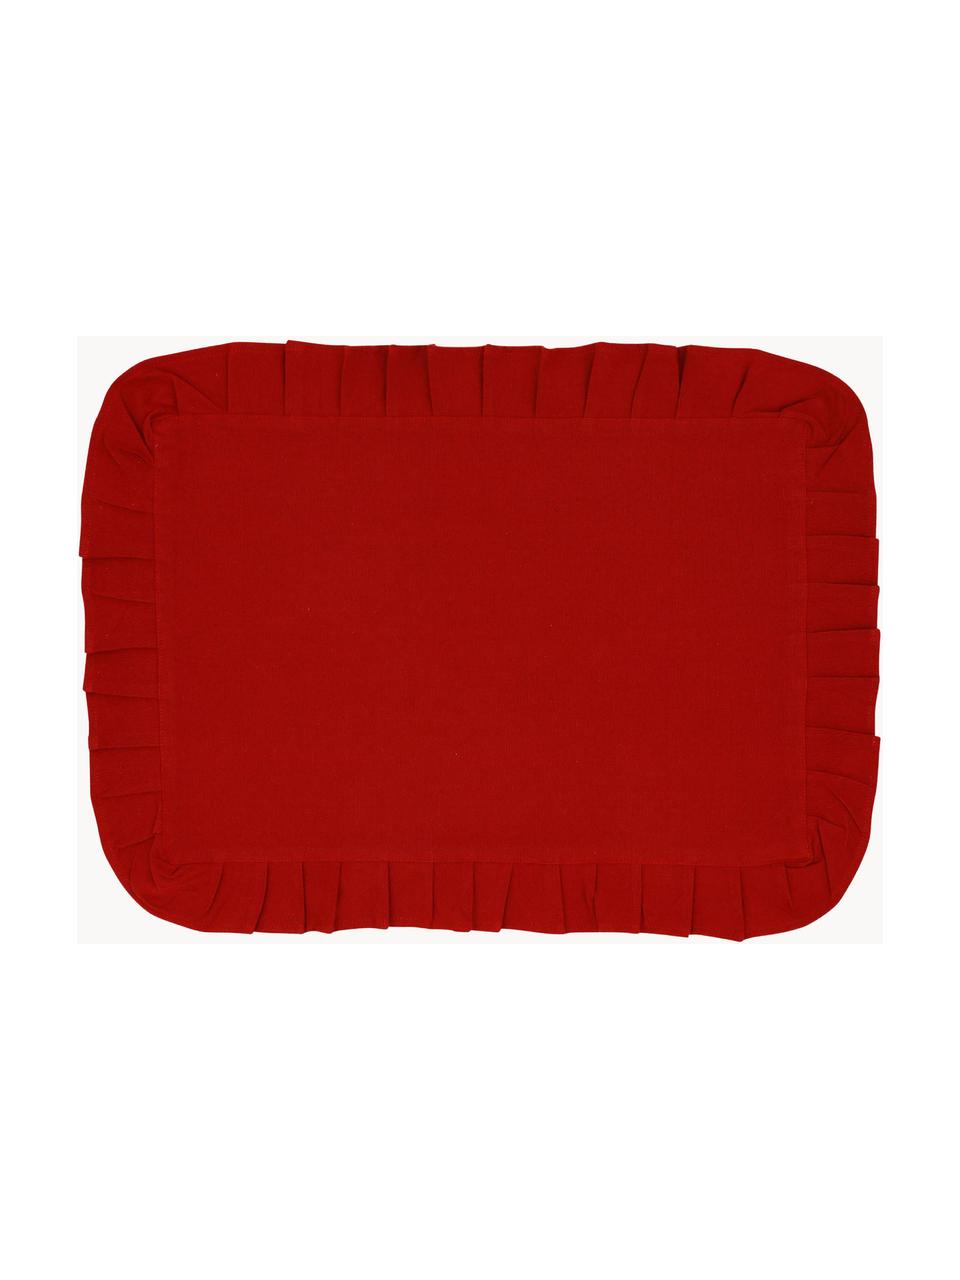 Tischsets Chambray mit Rüschen, 2 Stück, 100 % Baumwolle, Rot, B 30 x L 45 cm